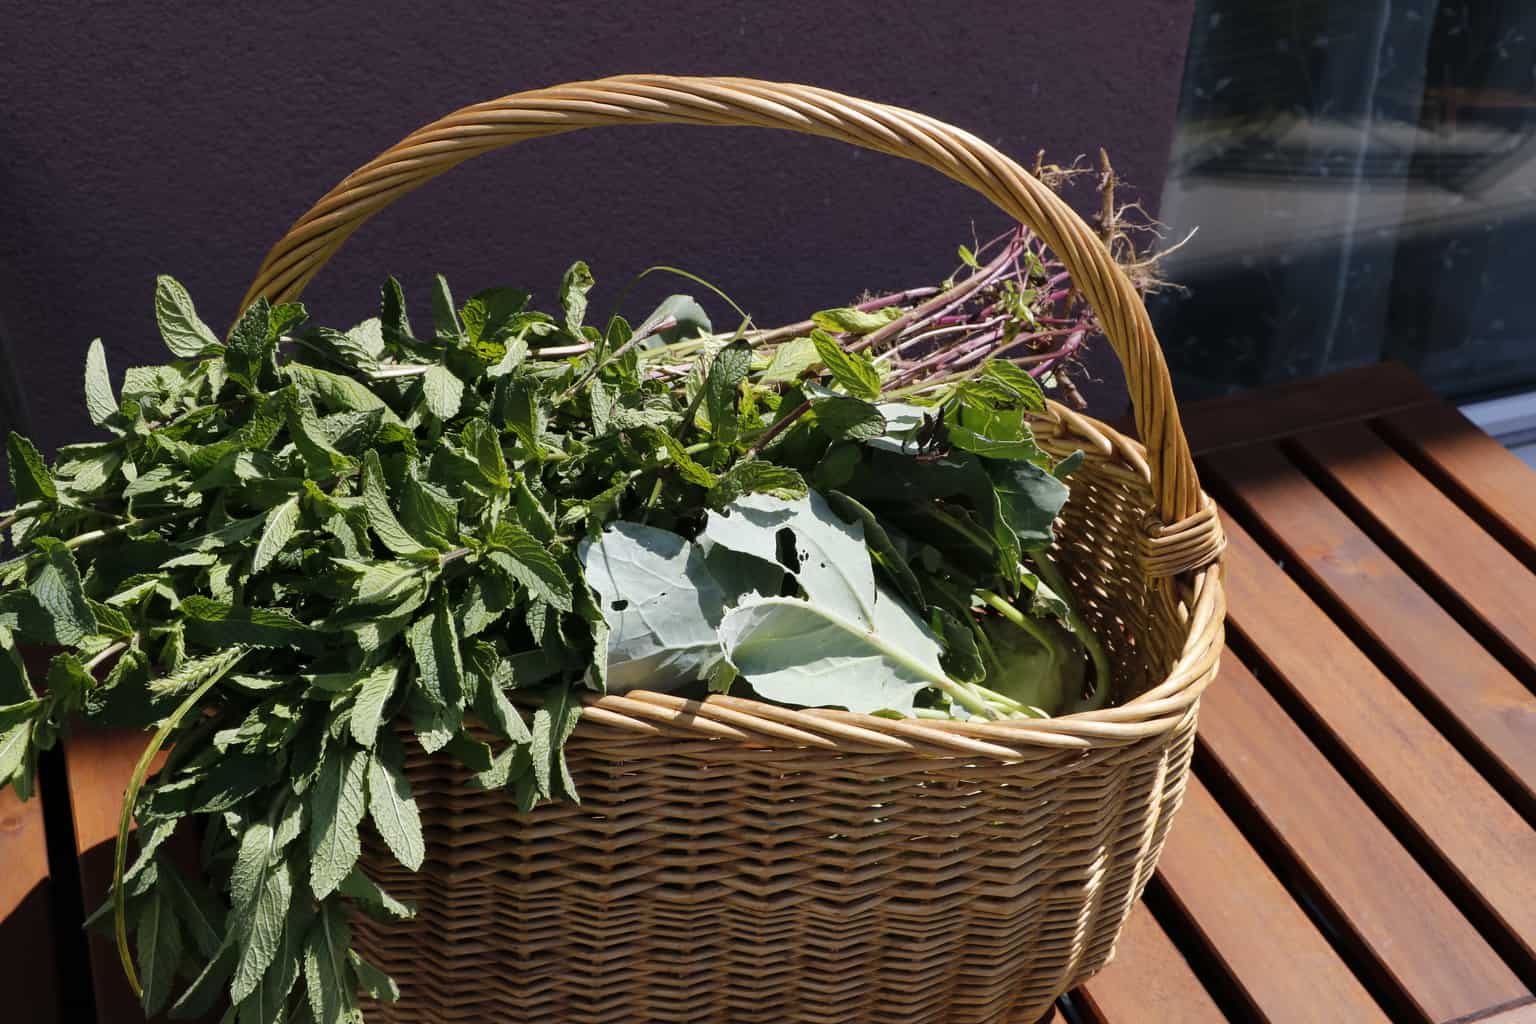 June Organic garden Harvest -Mint & Kohlrabi